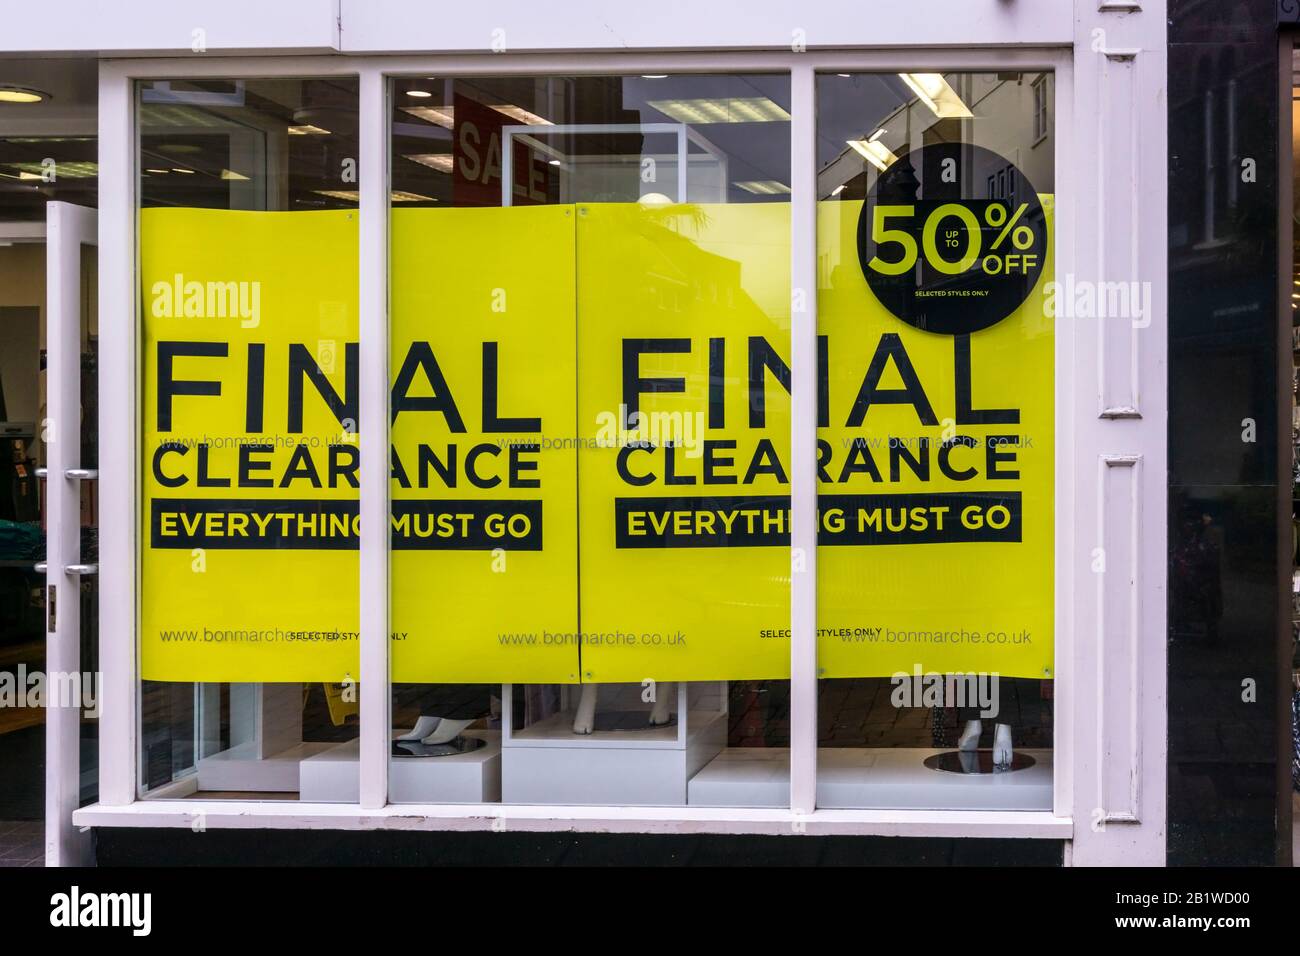 Publicité par affiche autorisation finale fermeture de la vente dans la fenêtre de bon Marche dans King's Lynn High Street. Banque D'Images